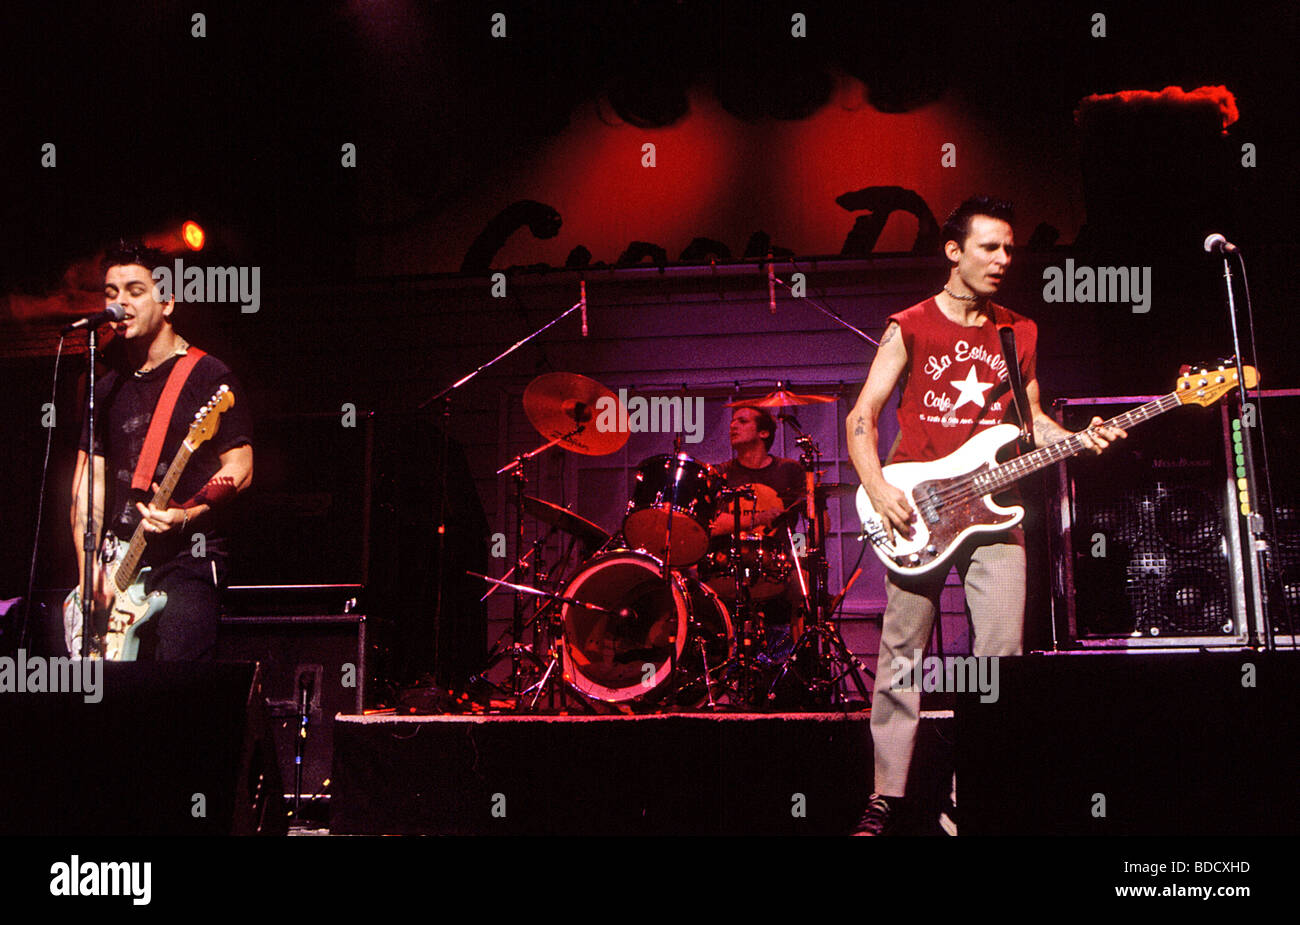 GREEN DAY - groupe de punk rock américain de l : Mike Dirnt, Tre Cool (batterie) et Billie Joe Armstrong en 1997 Banque D'Images